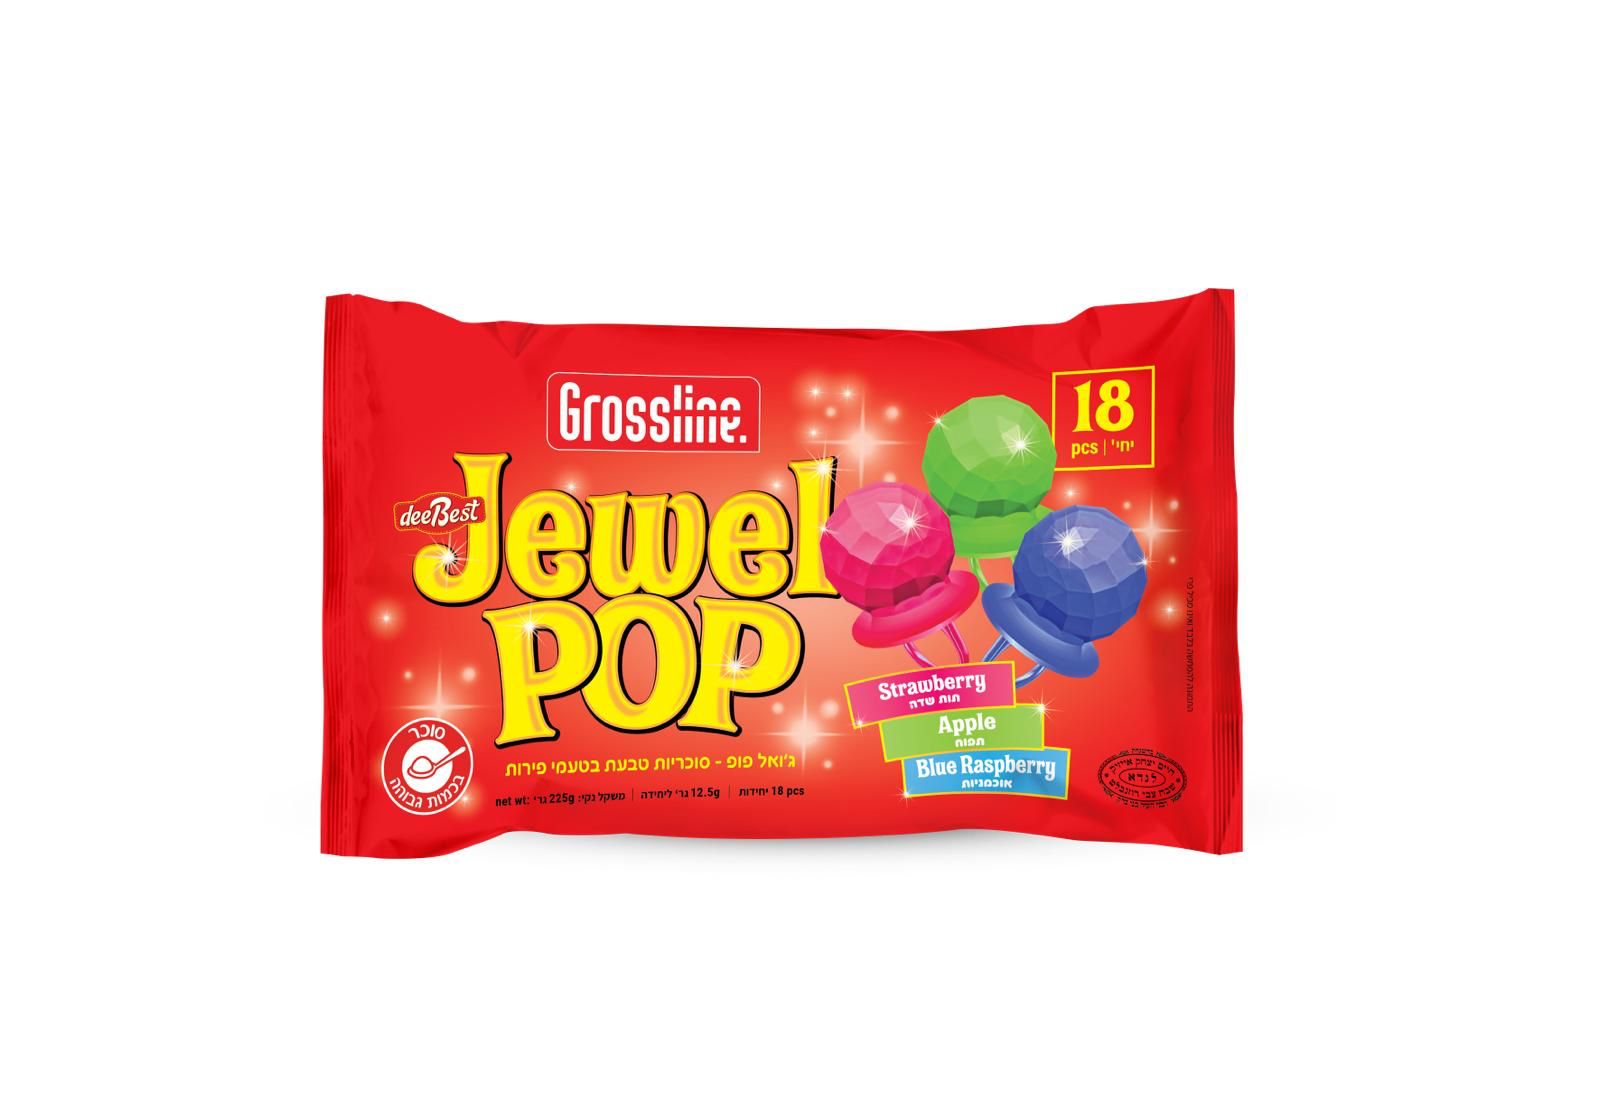 GROSSLINE JEWEL POP MIX BAG 18 PCS